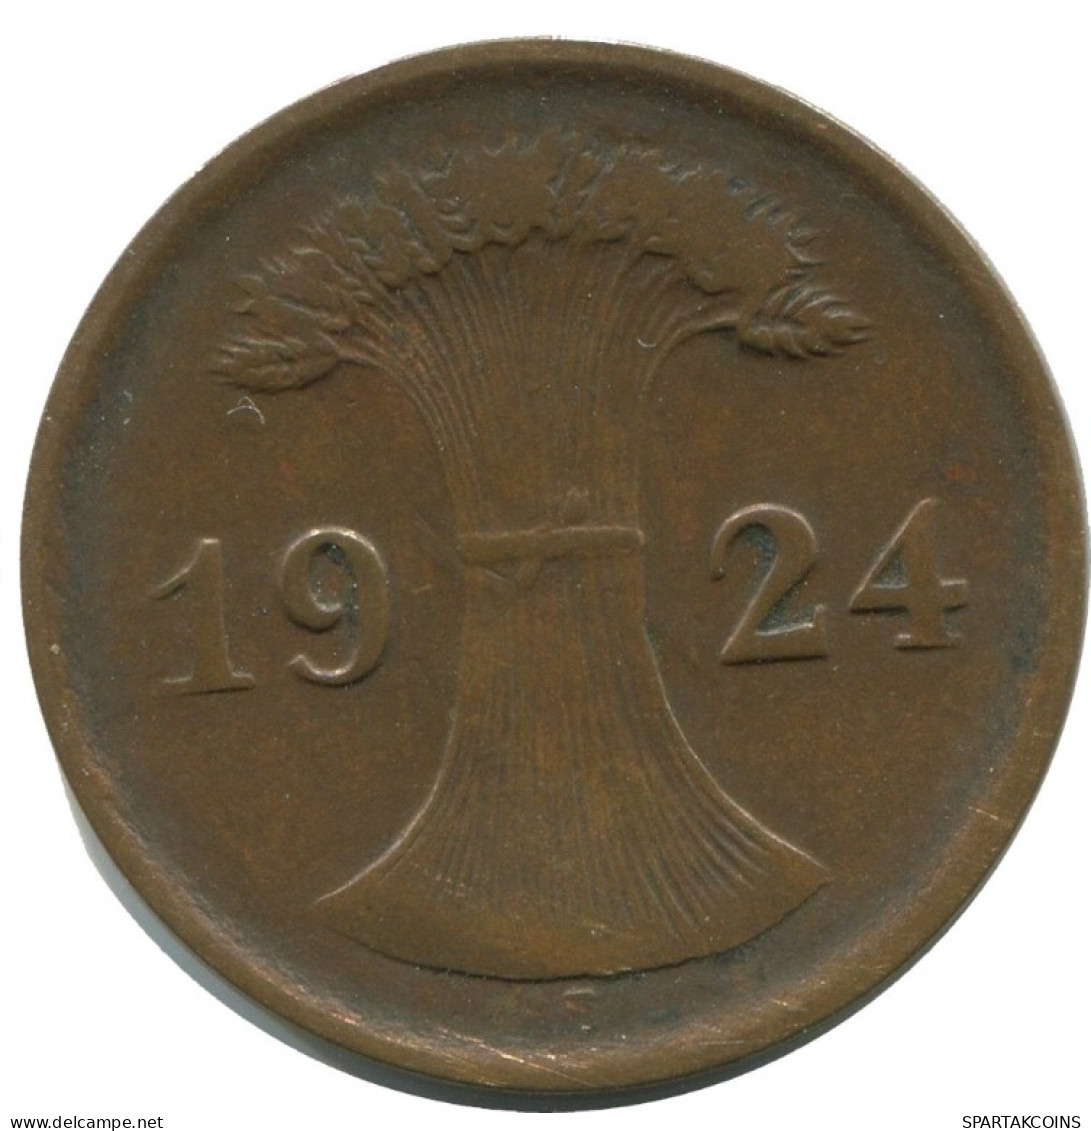 2 RENTENPFENNIG 1924 F DEUTSCHLAND Münze GERMANY #AD485.9.D.A - 2 Rentenpfennig & 2 Reichspfennig